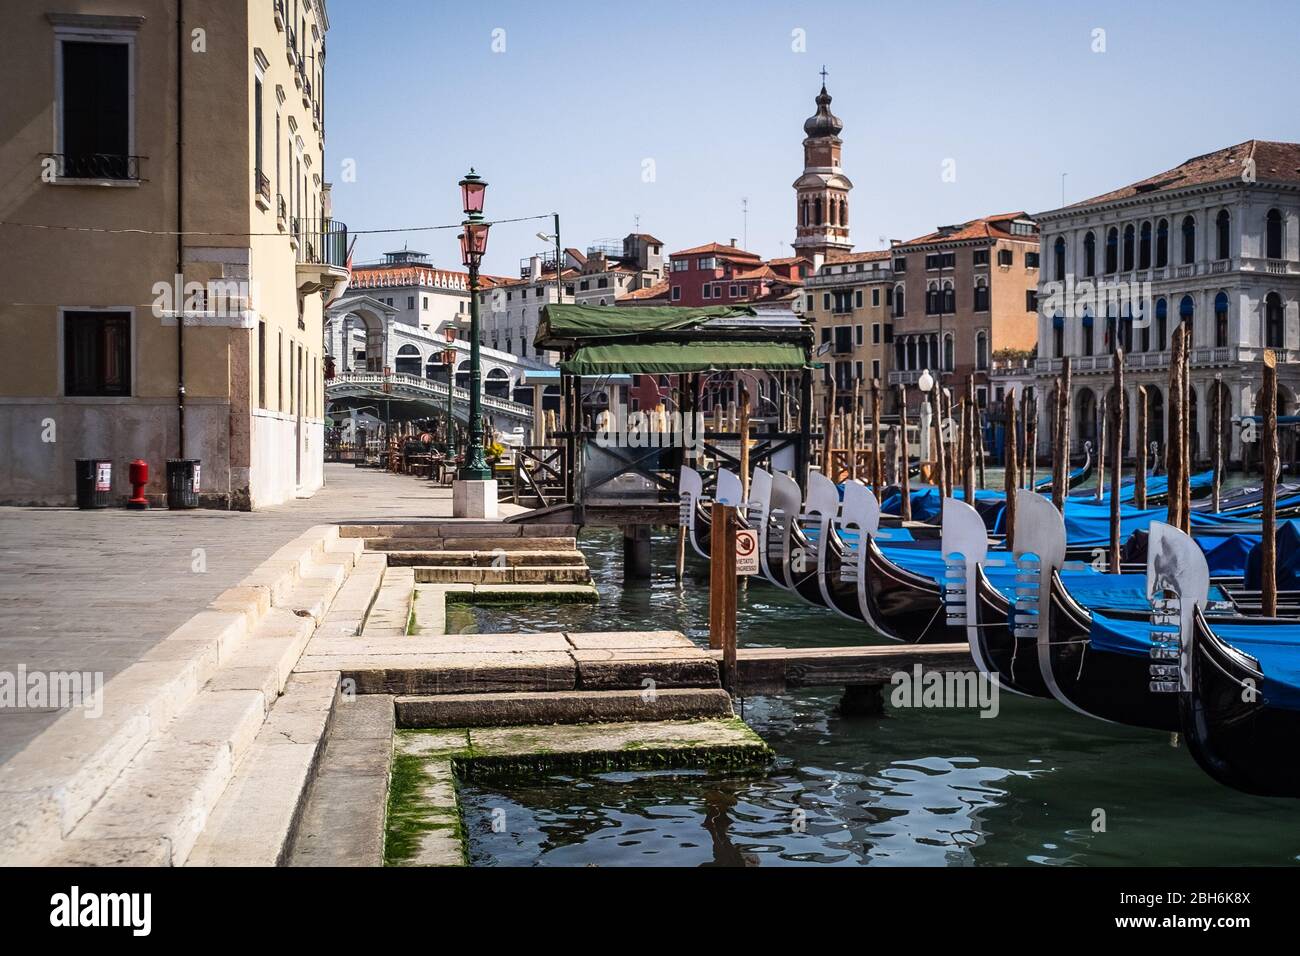 VENEZIA, ITALIA - APRILE 2020: Gondole ormeggiate accanto al ponte di Rialto durante la chiusura nazionale per la pandemia Covid-19. Foto Stock